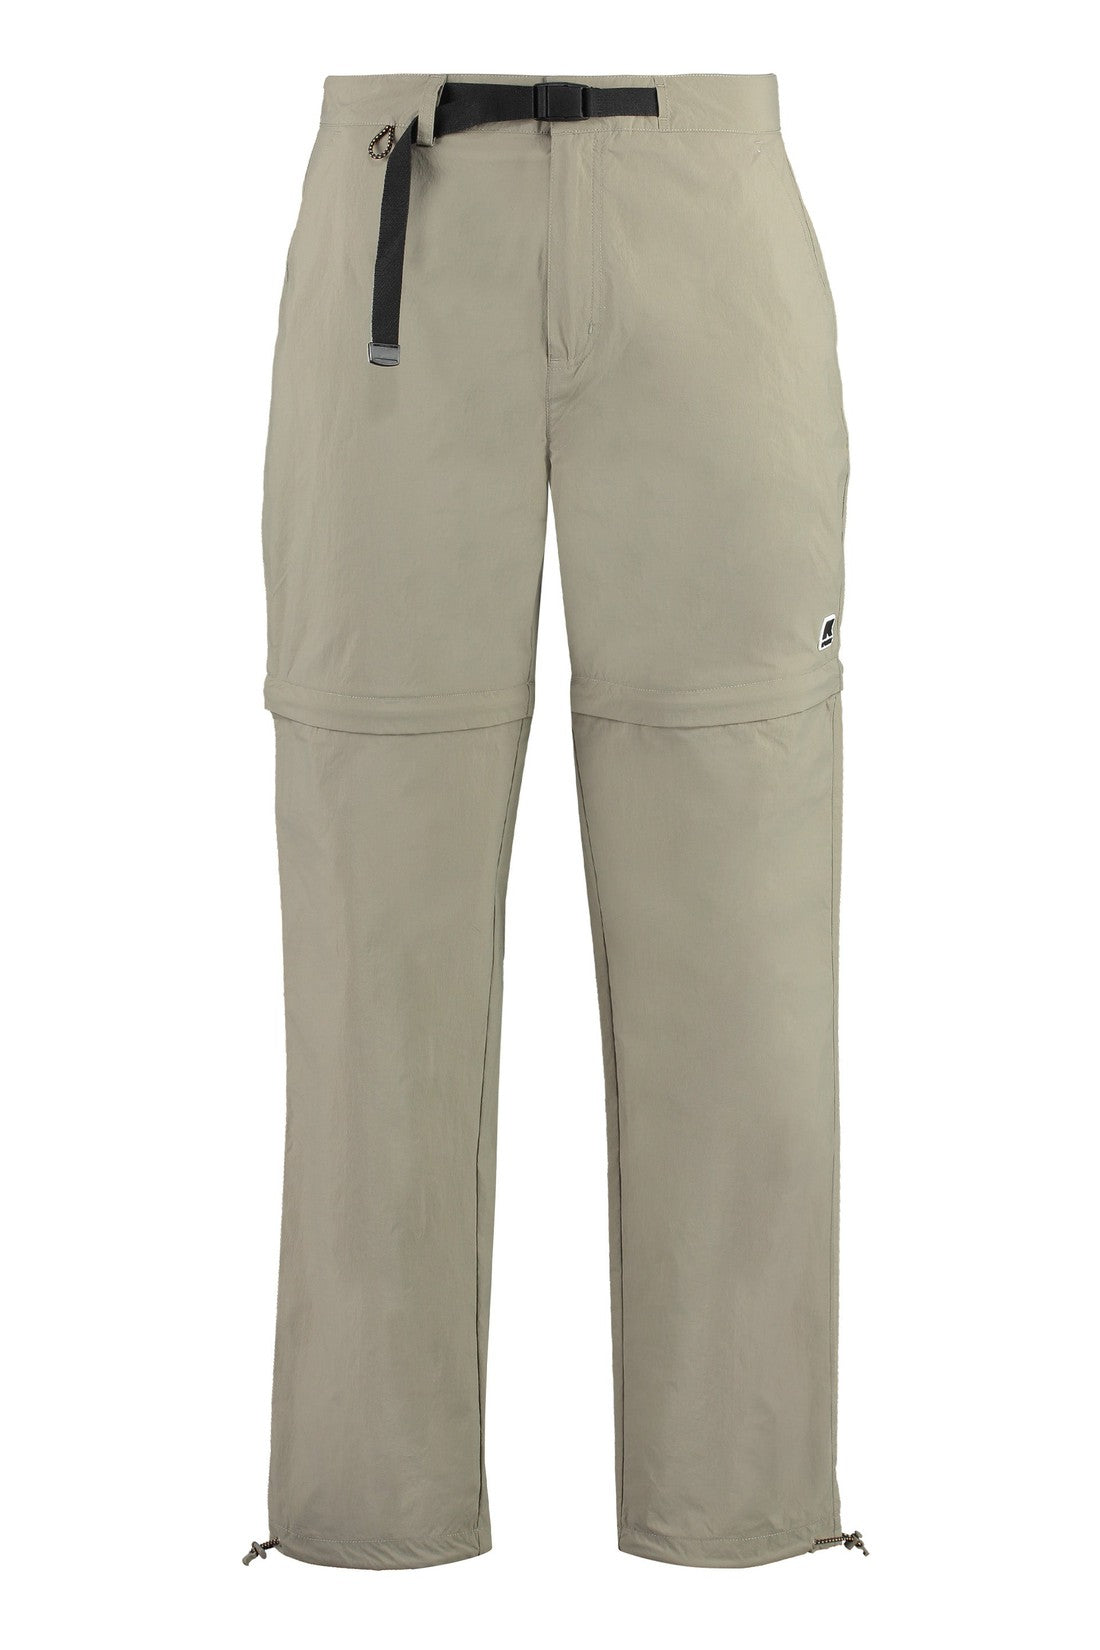 K-Way-OUTLET-SALE-Sepaux nylon pants-ARCHIVIST